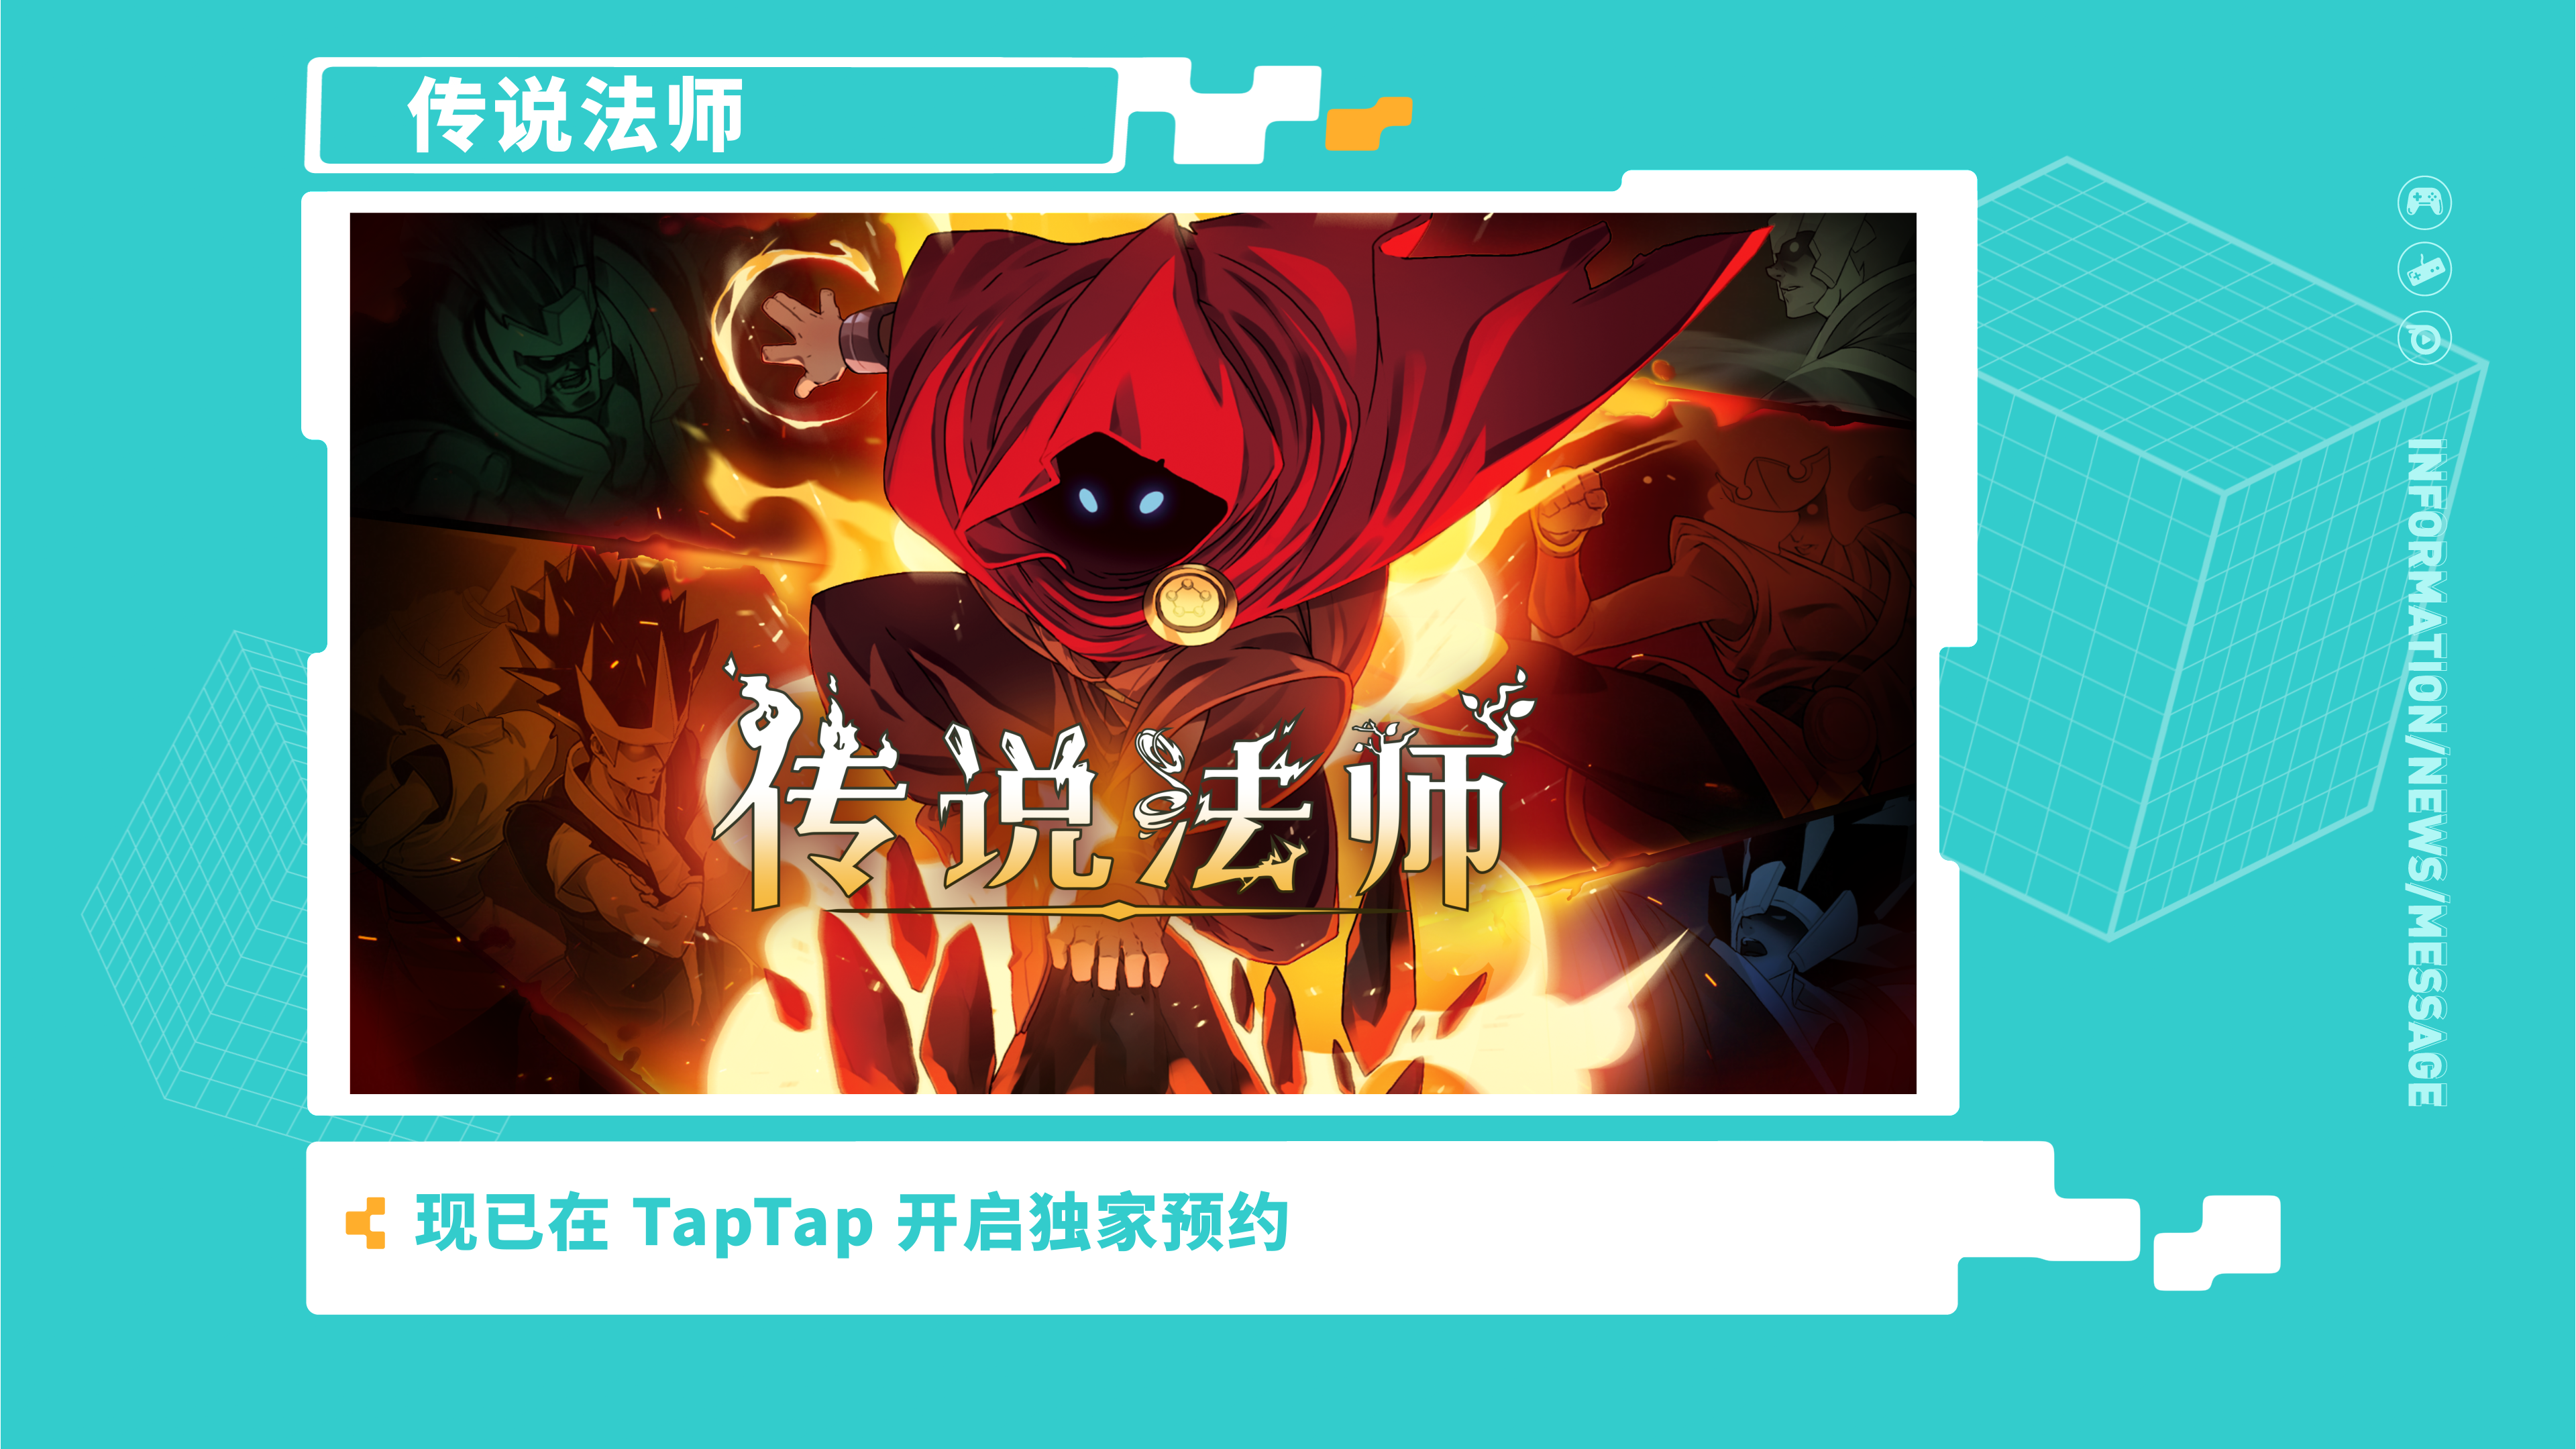 《传说法师》—2021 TapTap 游戏发布会